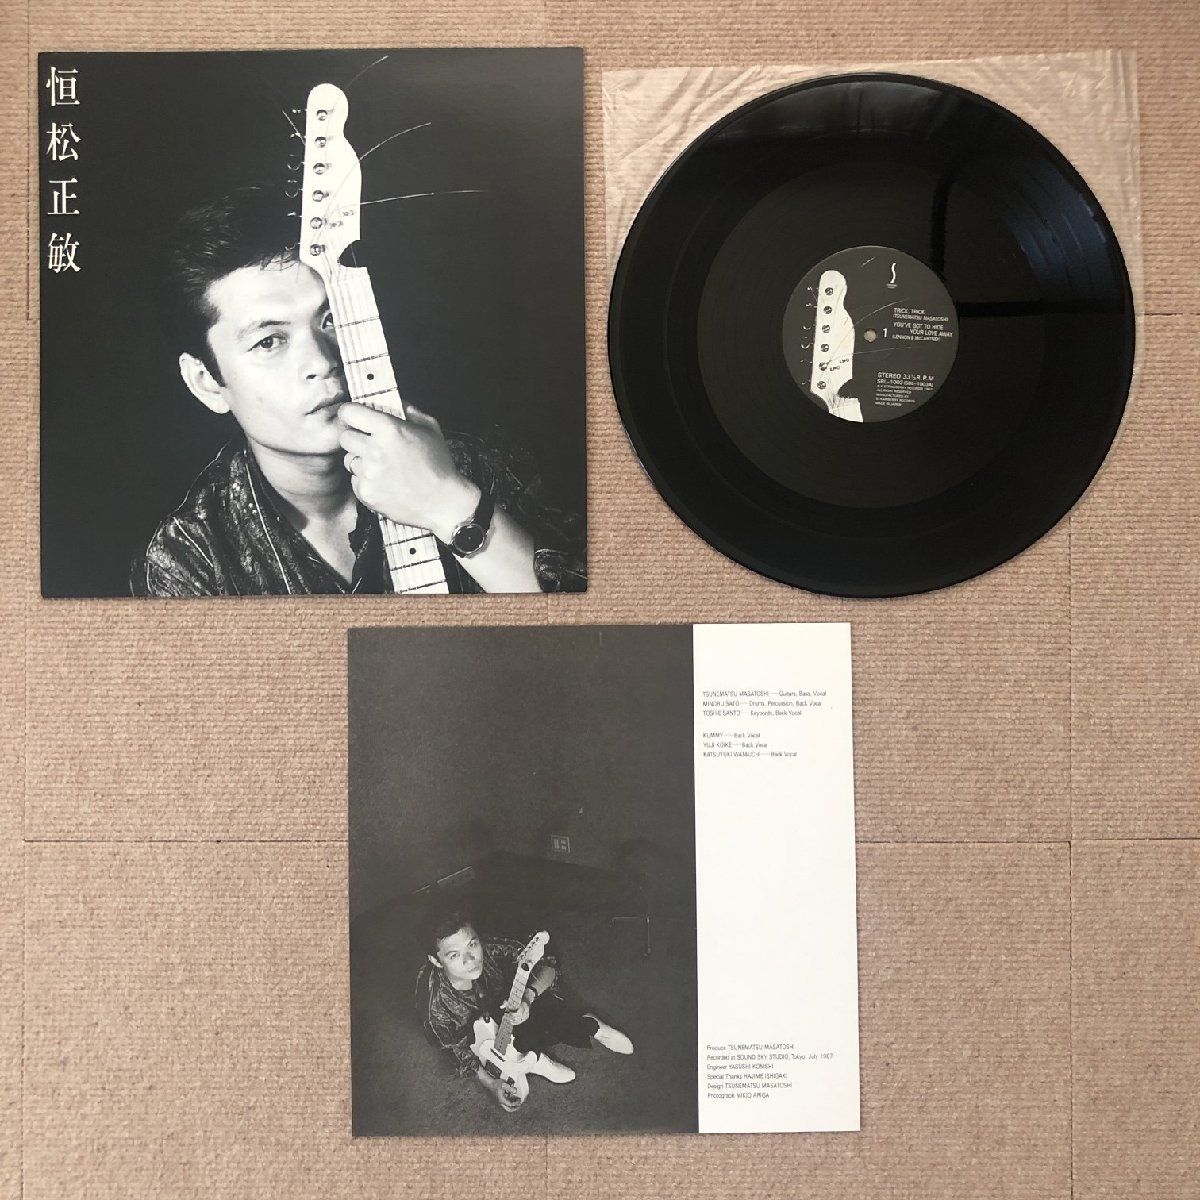 傷なし美盤 レア盤 恒松正敏(ツネマツマサトシ) Masatoshi Tsunematsu 1987年 LPレコード S/T フリクション EDPS_画像5